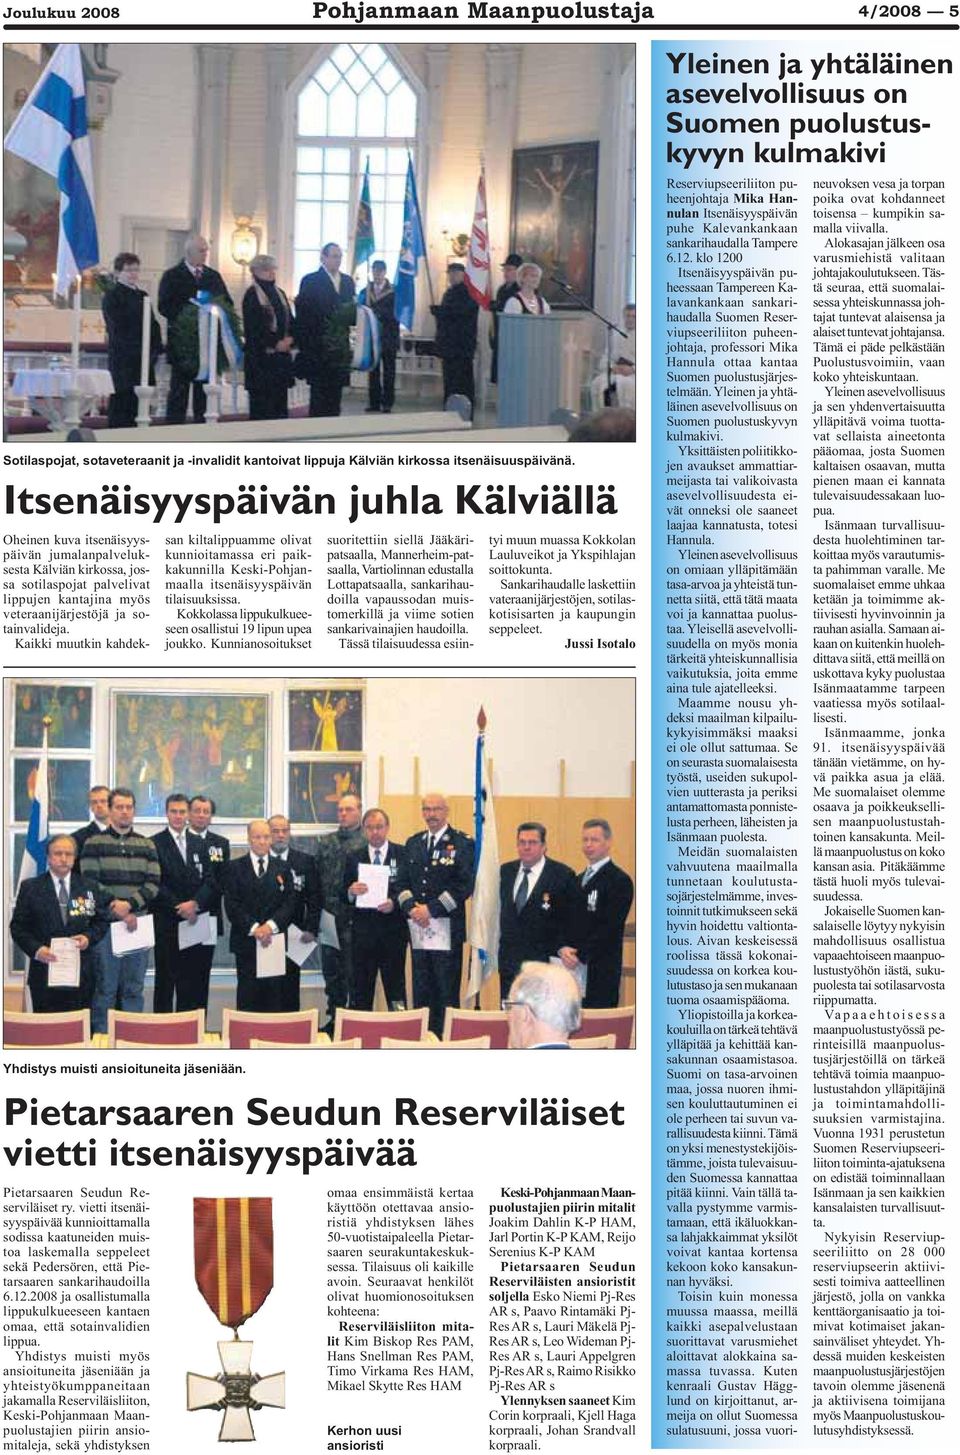 vietti itsenäisyyspäivää kunnioittamalla sodissa kaatuneiden muistoa laskemalla seppeleet sekä Pedersören, että Pietarsaaren sankarihaudoilla 6.12.